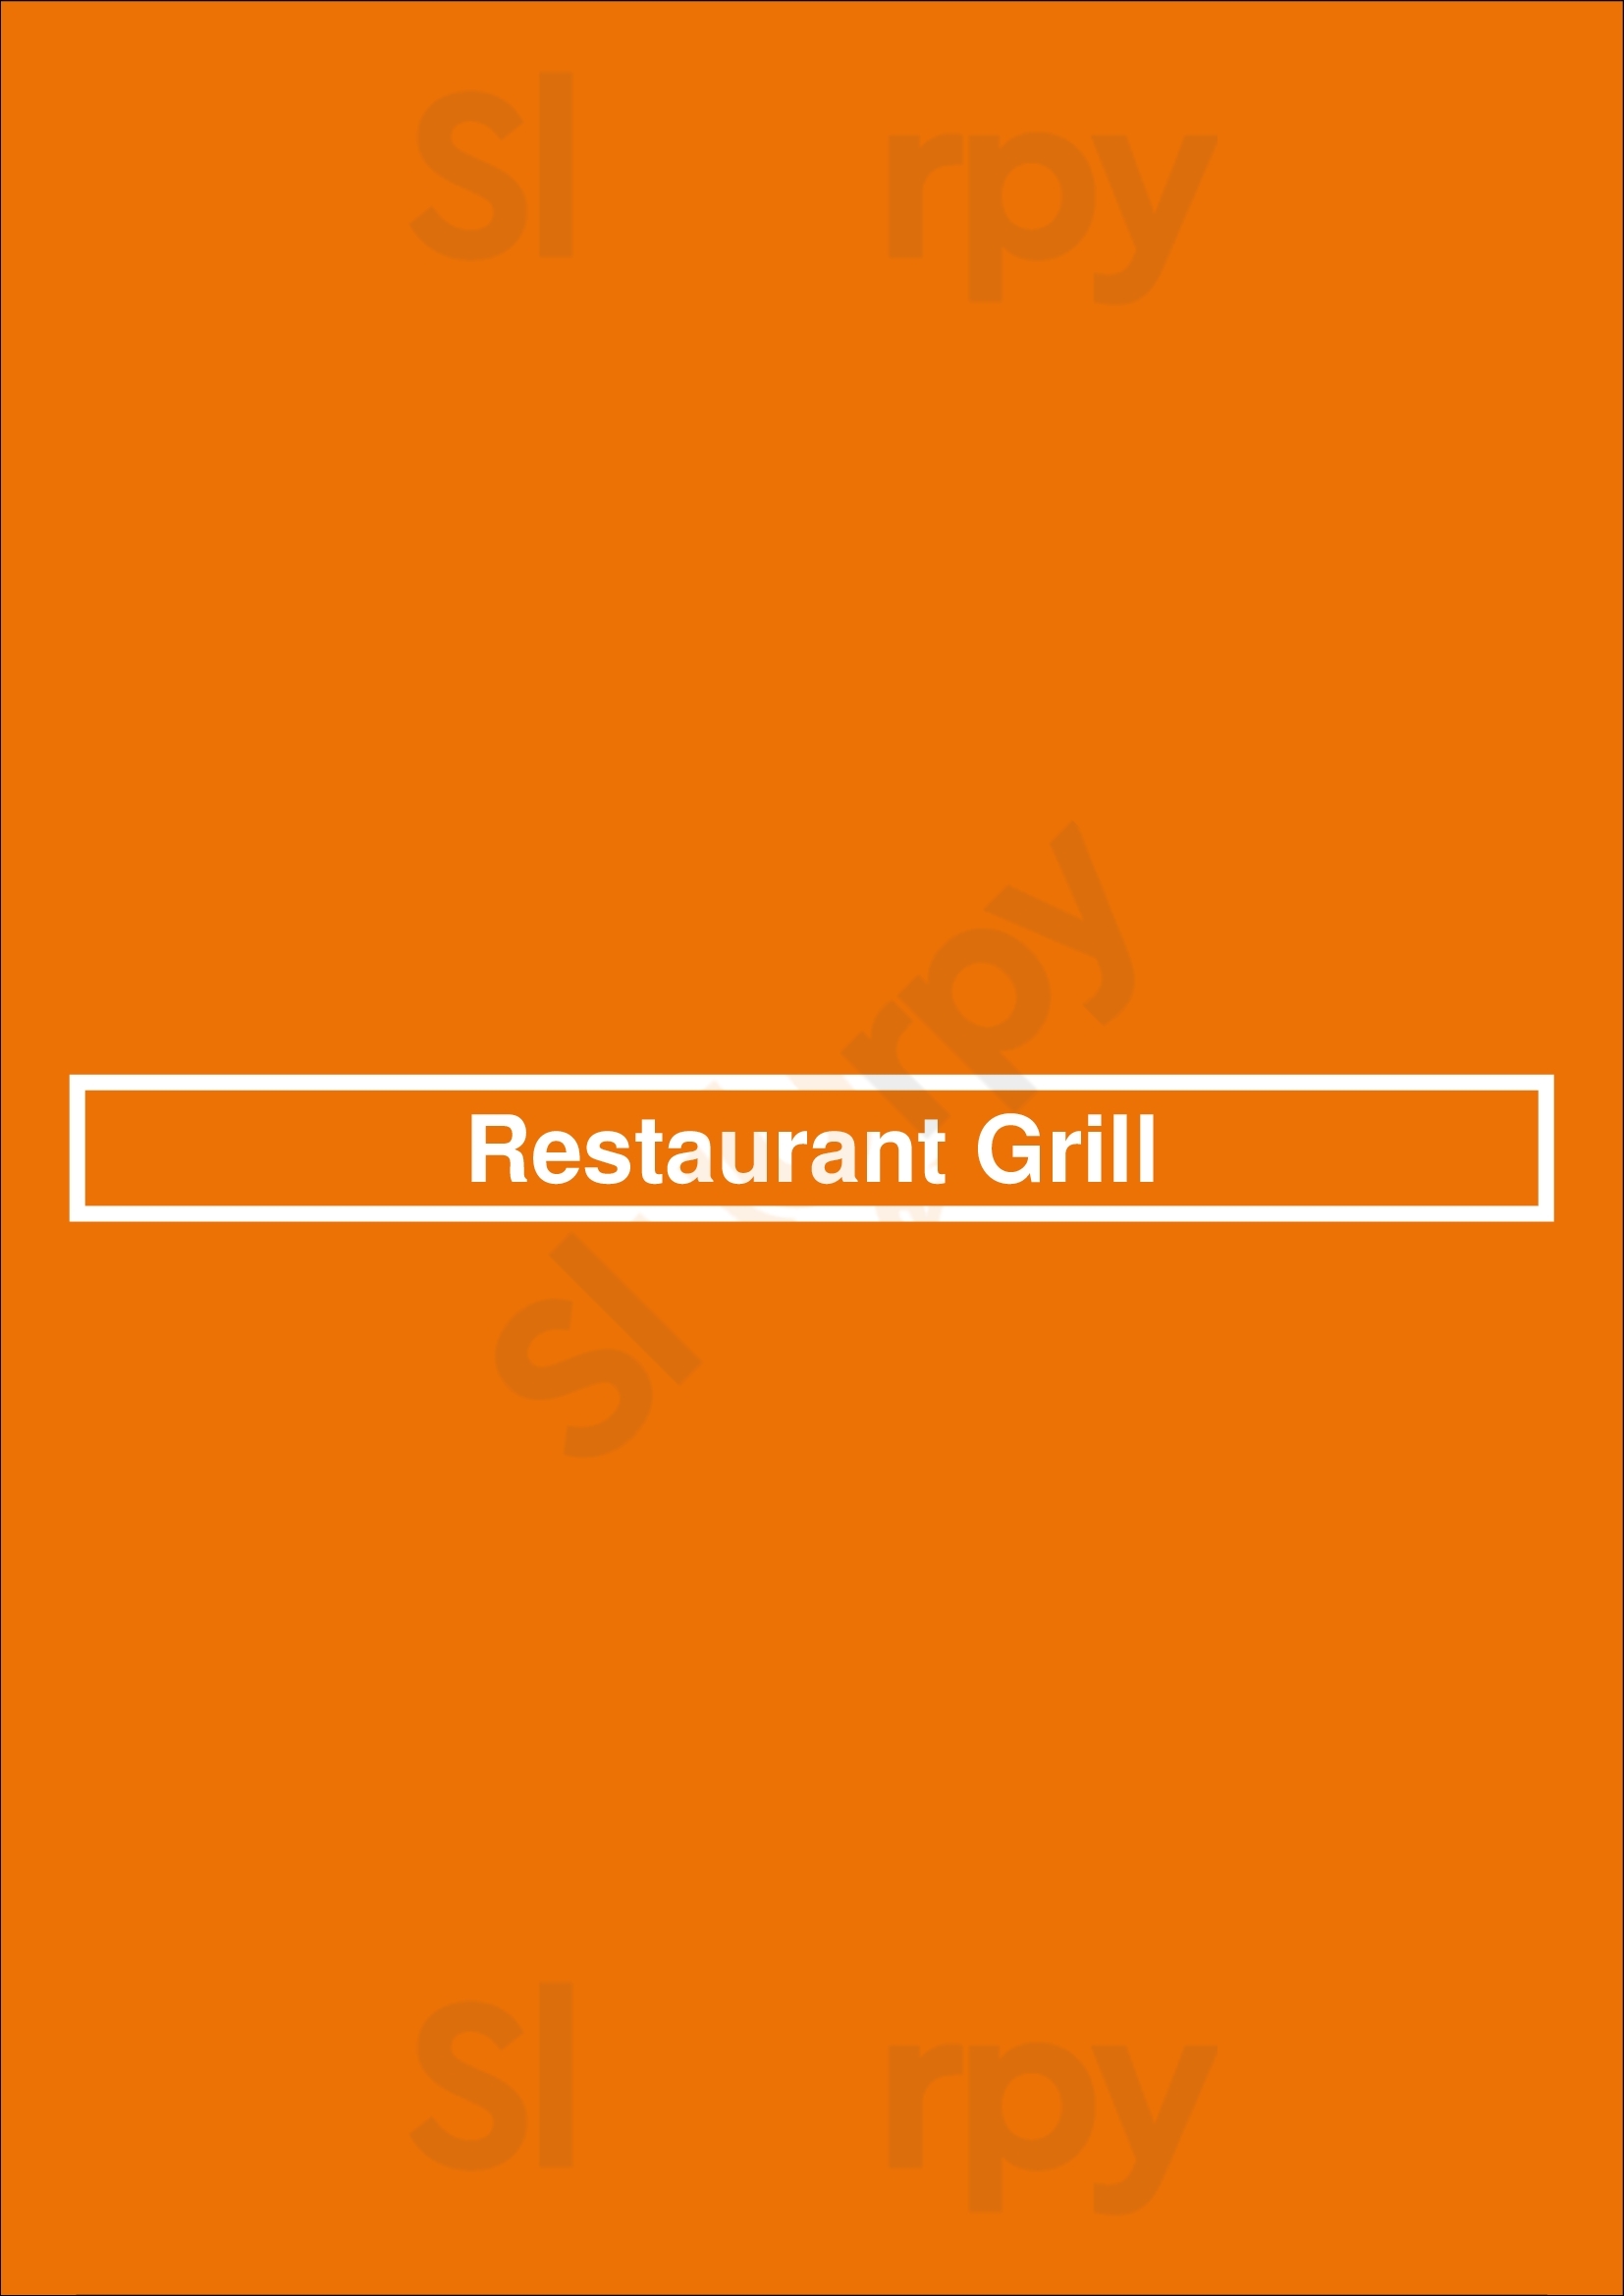 Restaurant Grill Berlin Menu - 1